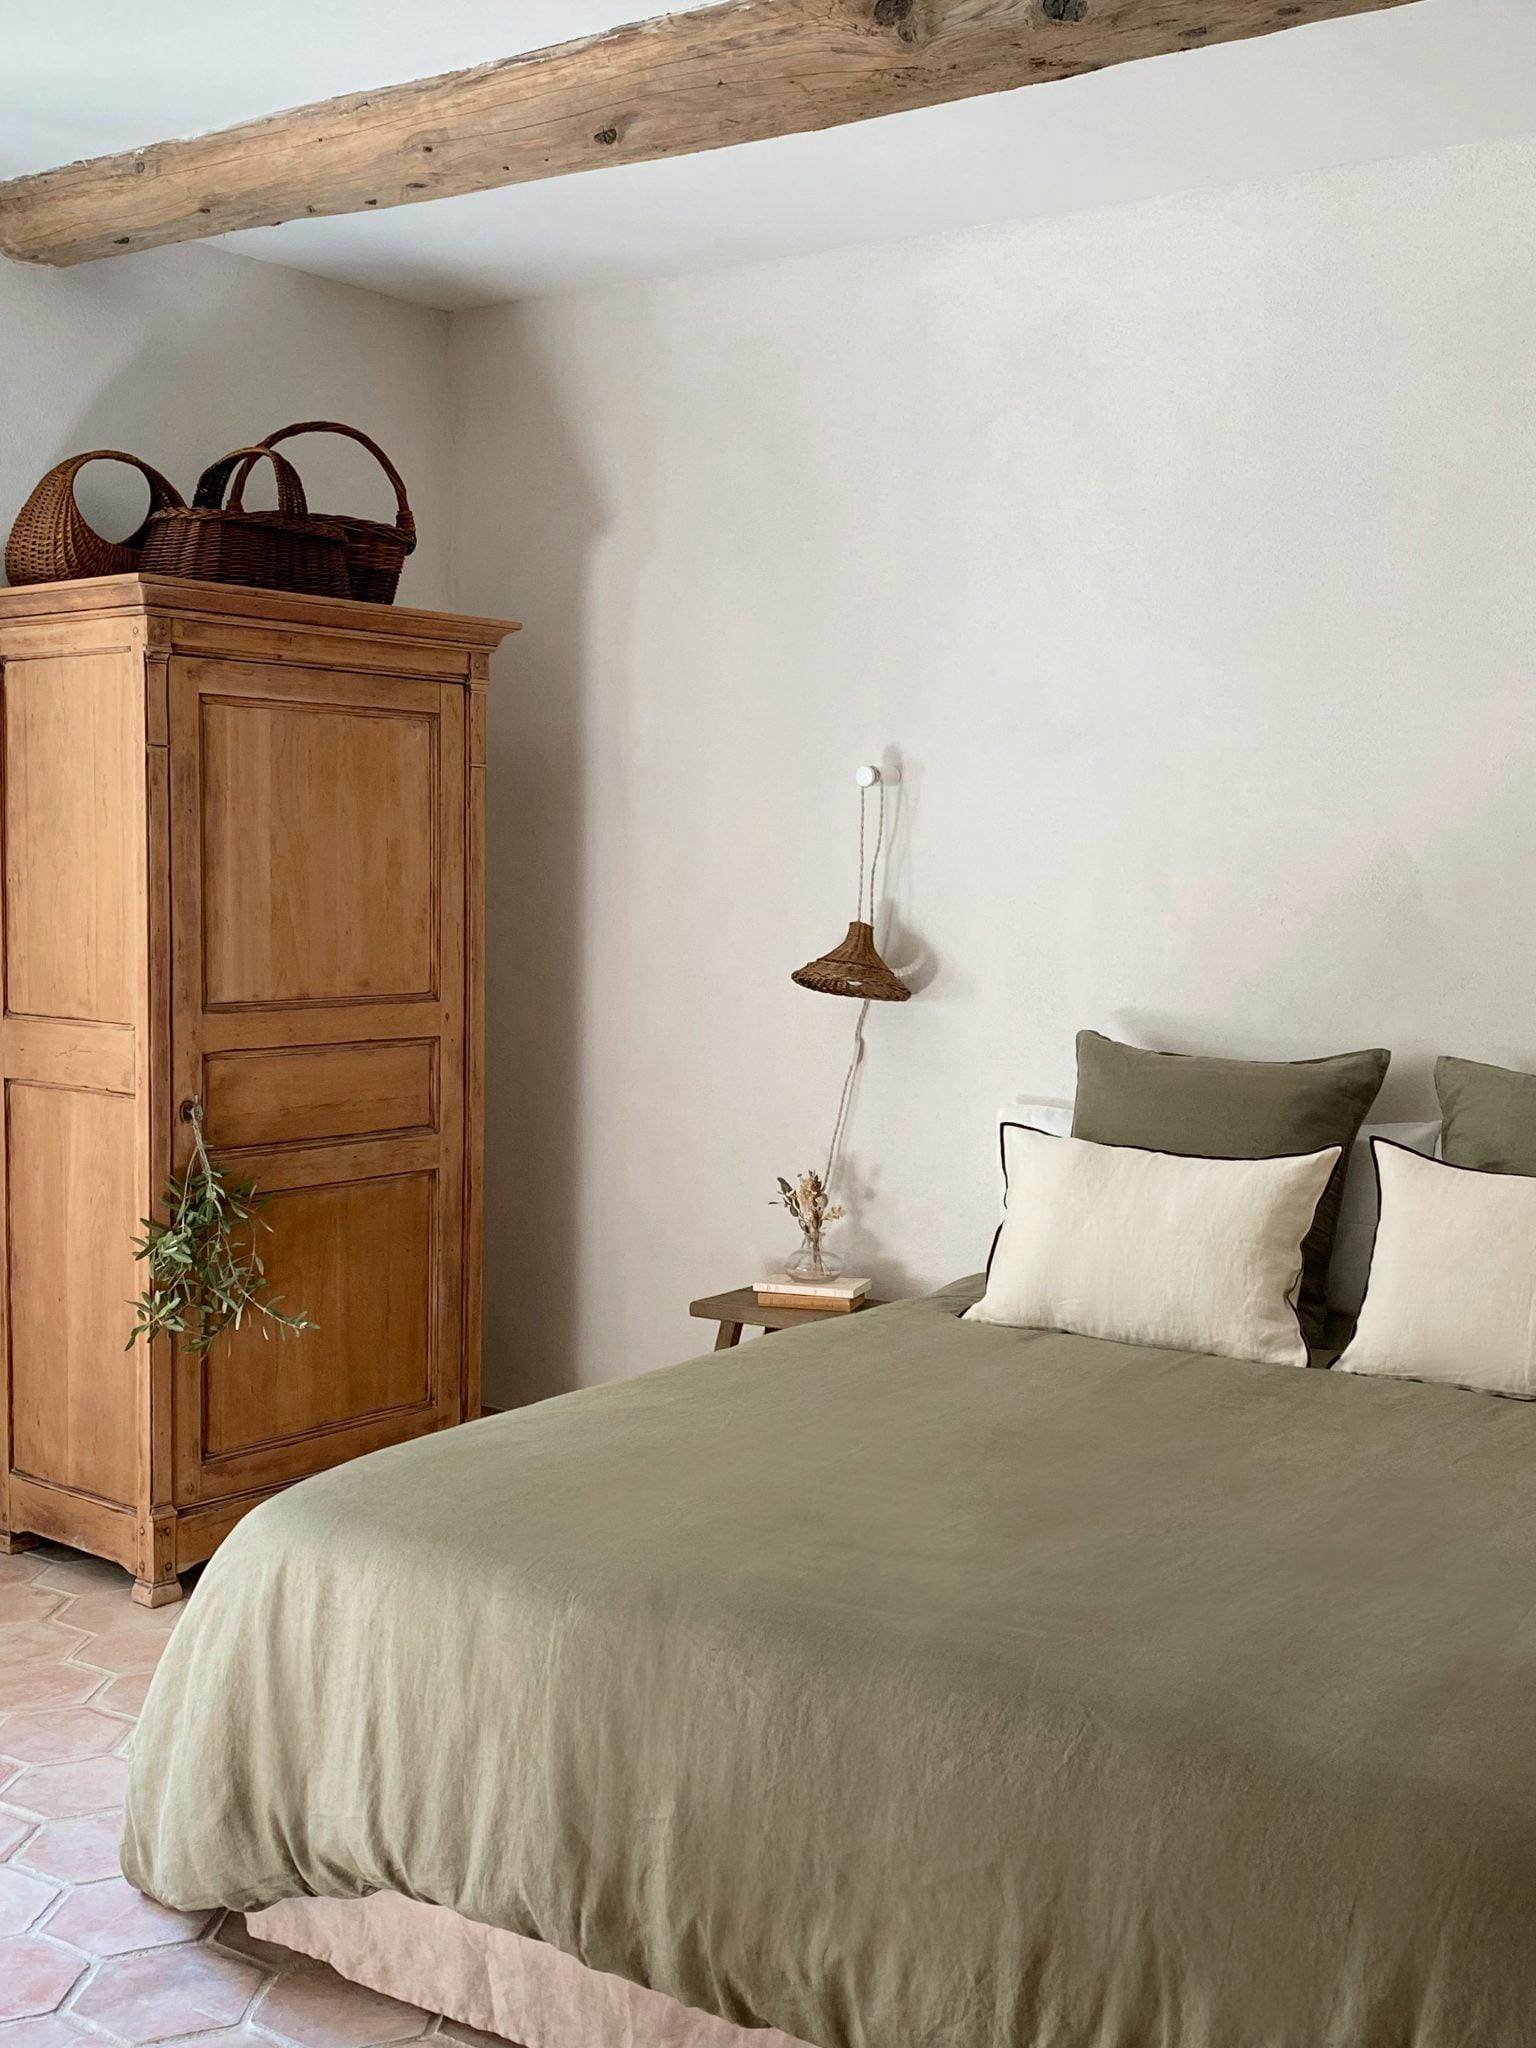 Murs à la chaux, lit double et draps en lin verts, armoire provençale